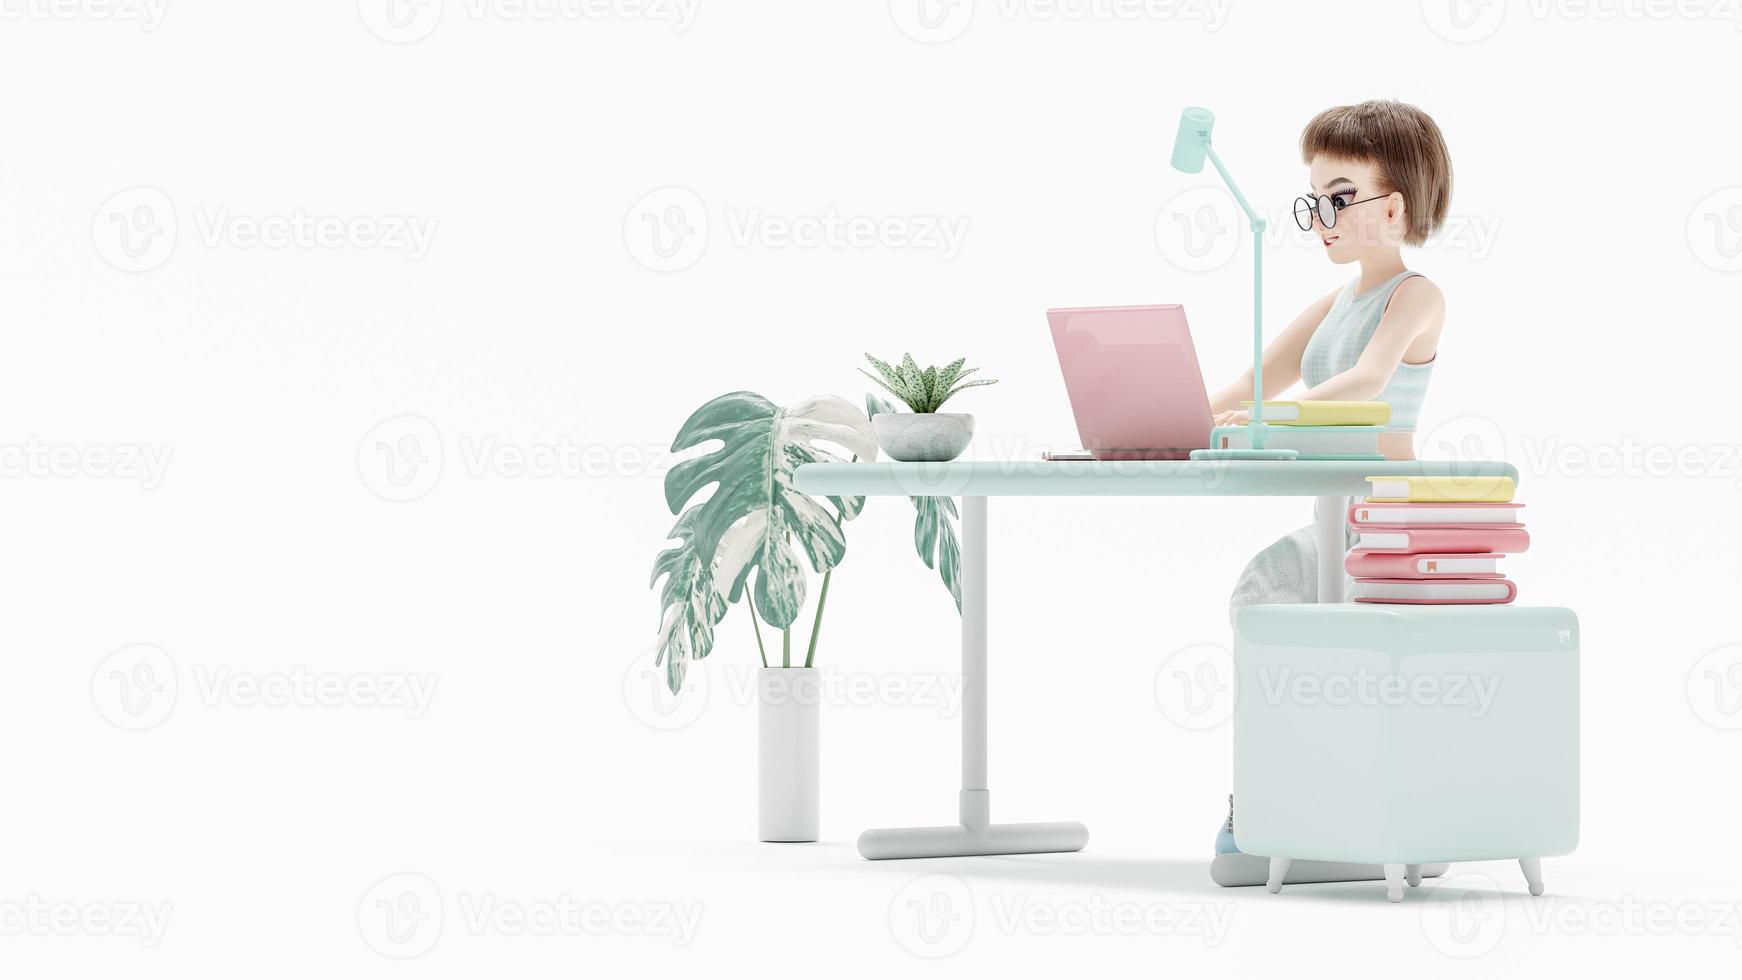 heureuse jeune femme assise sur une chaise. aime étudier, apprendre et rechercher des informations à partir d'un ordinateur. un ordinateur portable rose est placé sur le bureau. personnage de dessin animé, rendu 3d photo